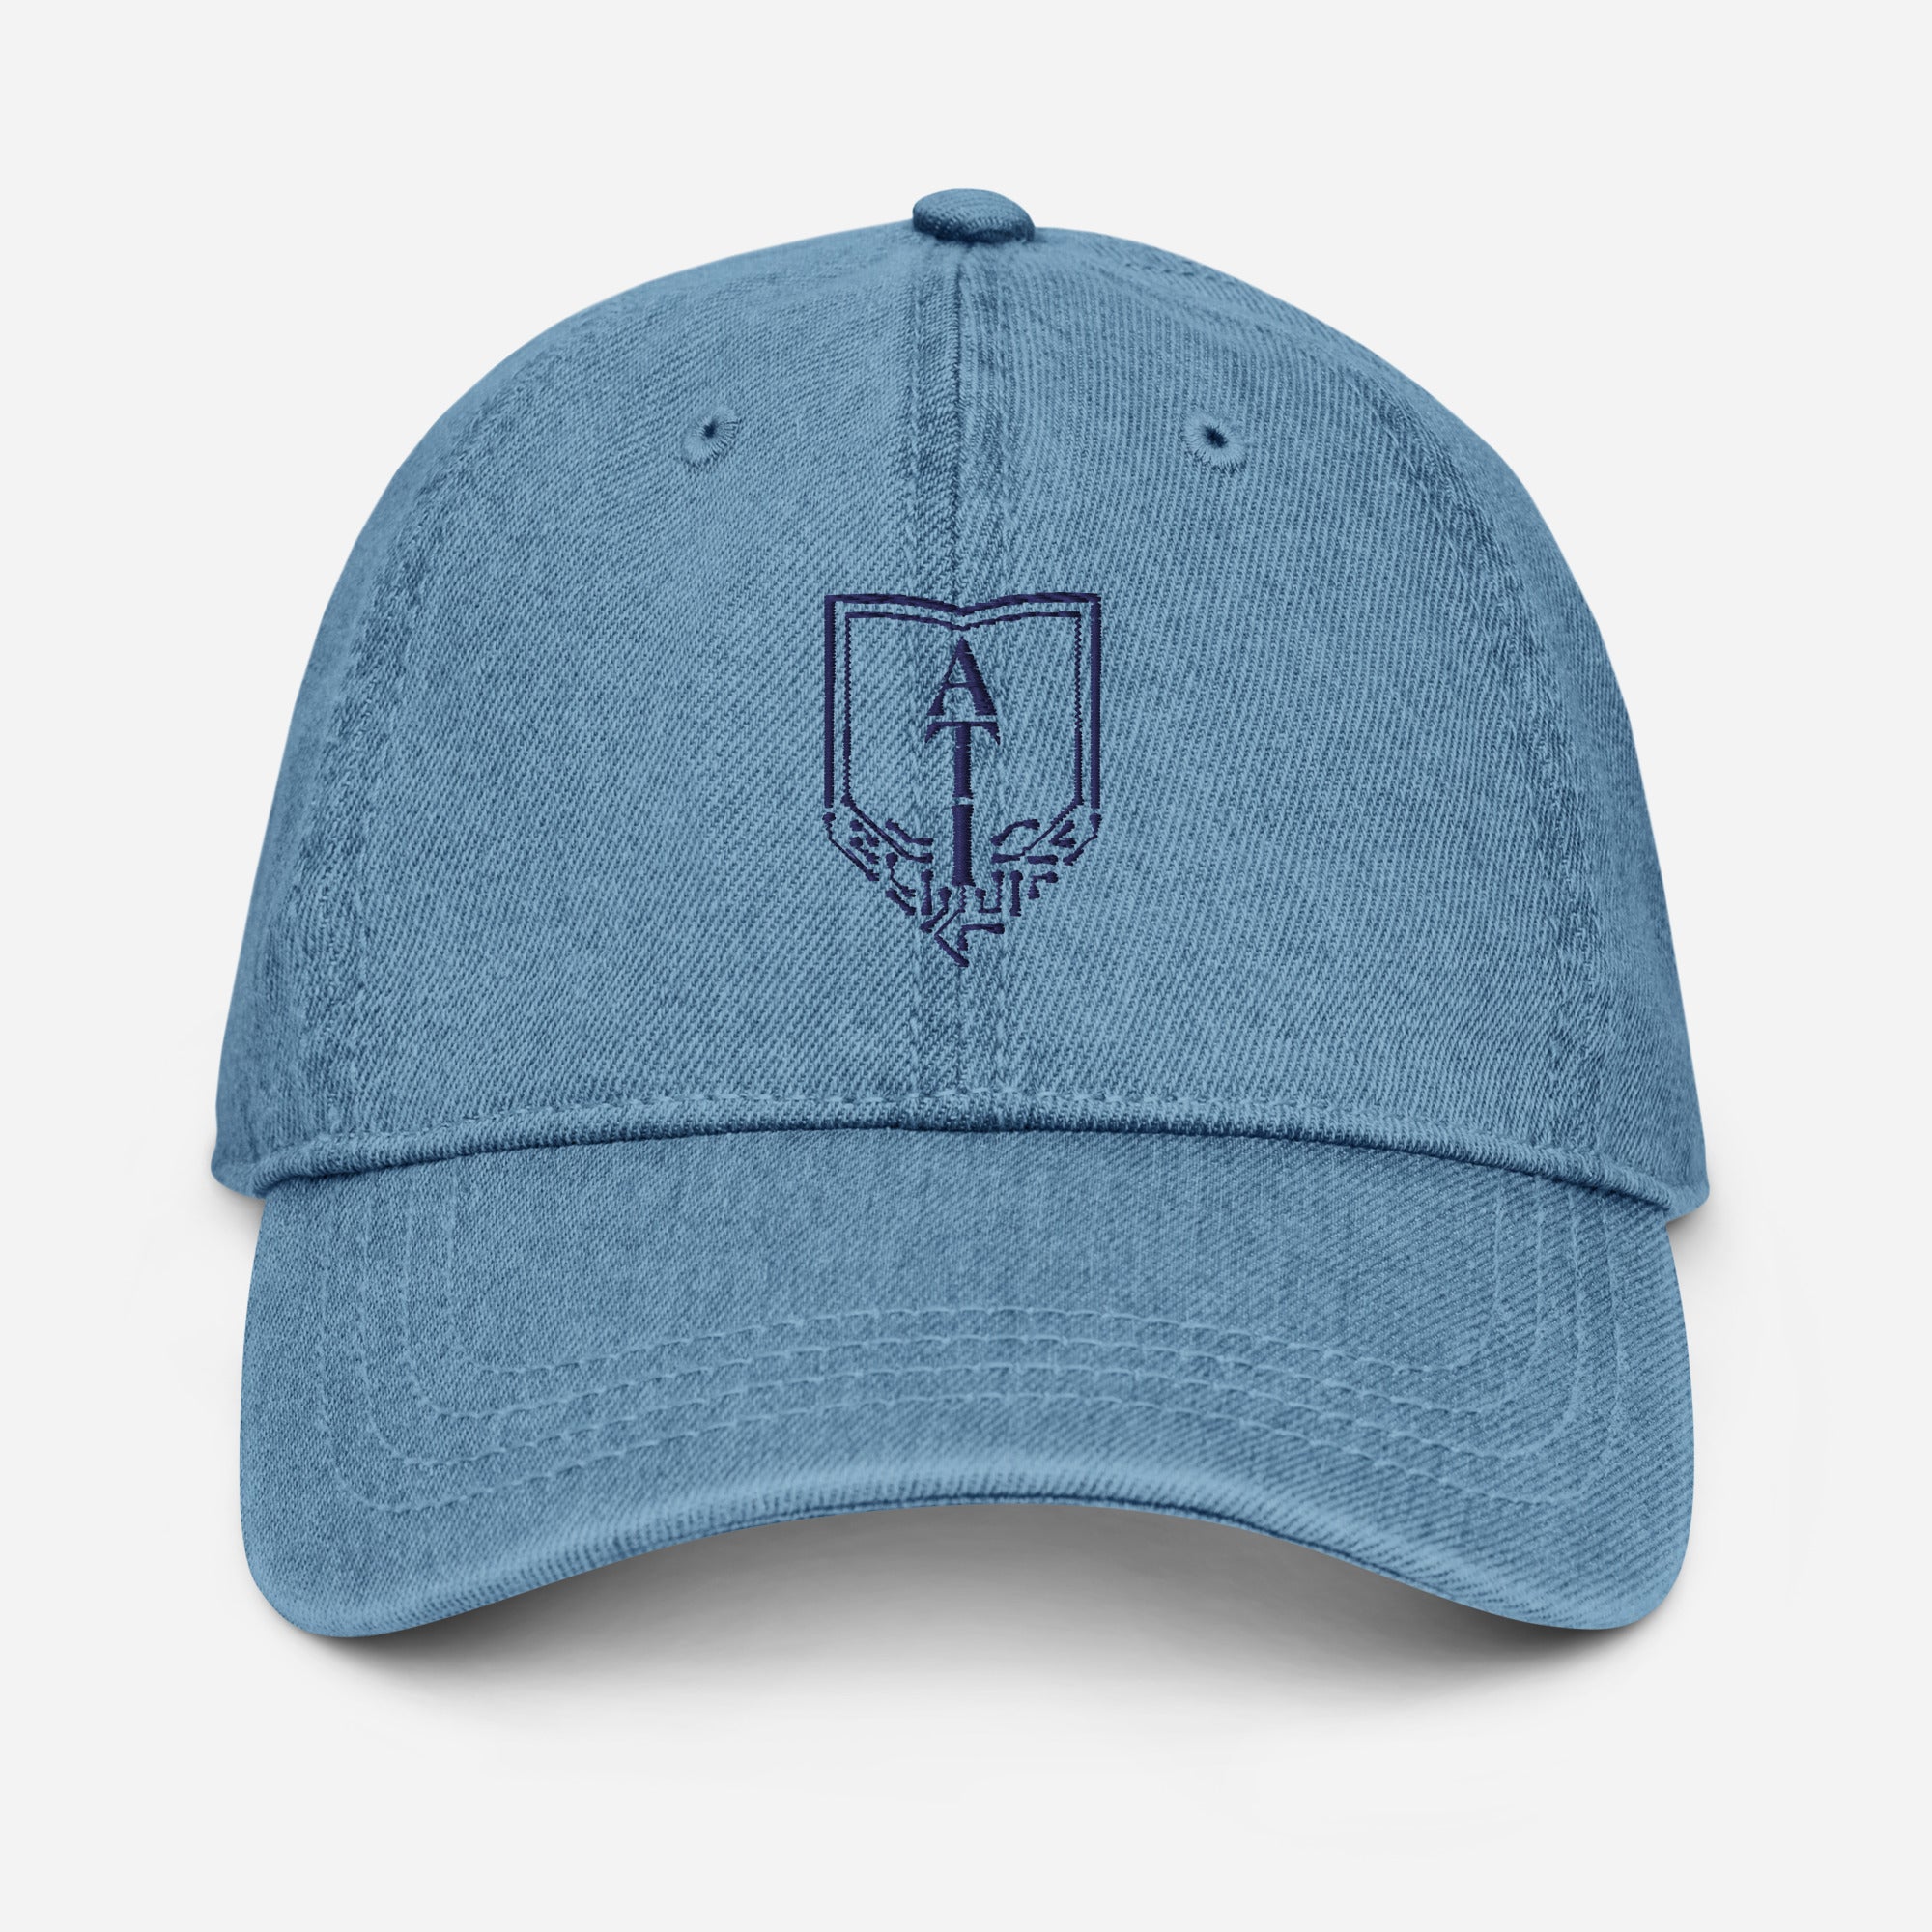 ATI Denim Hat – The ATI Store